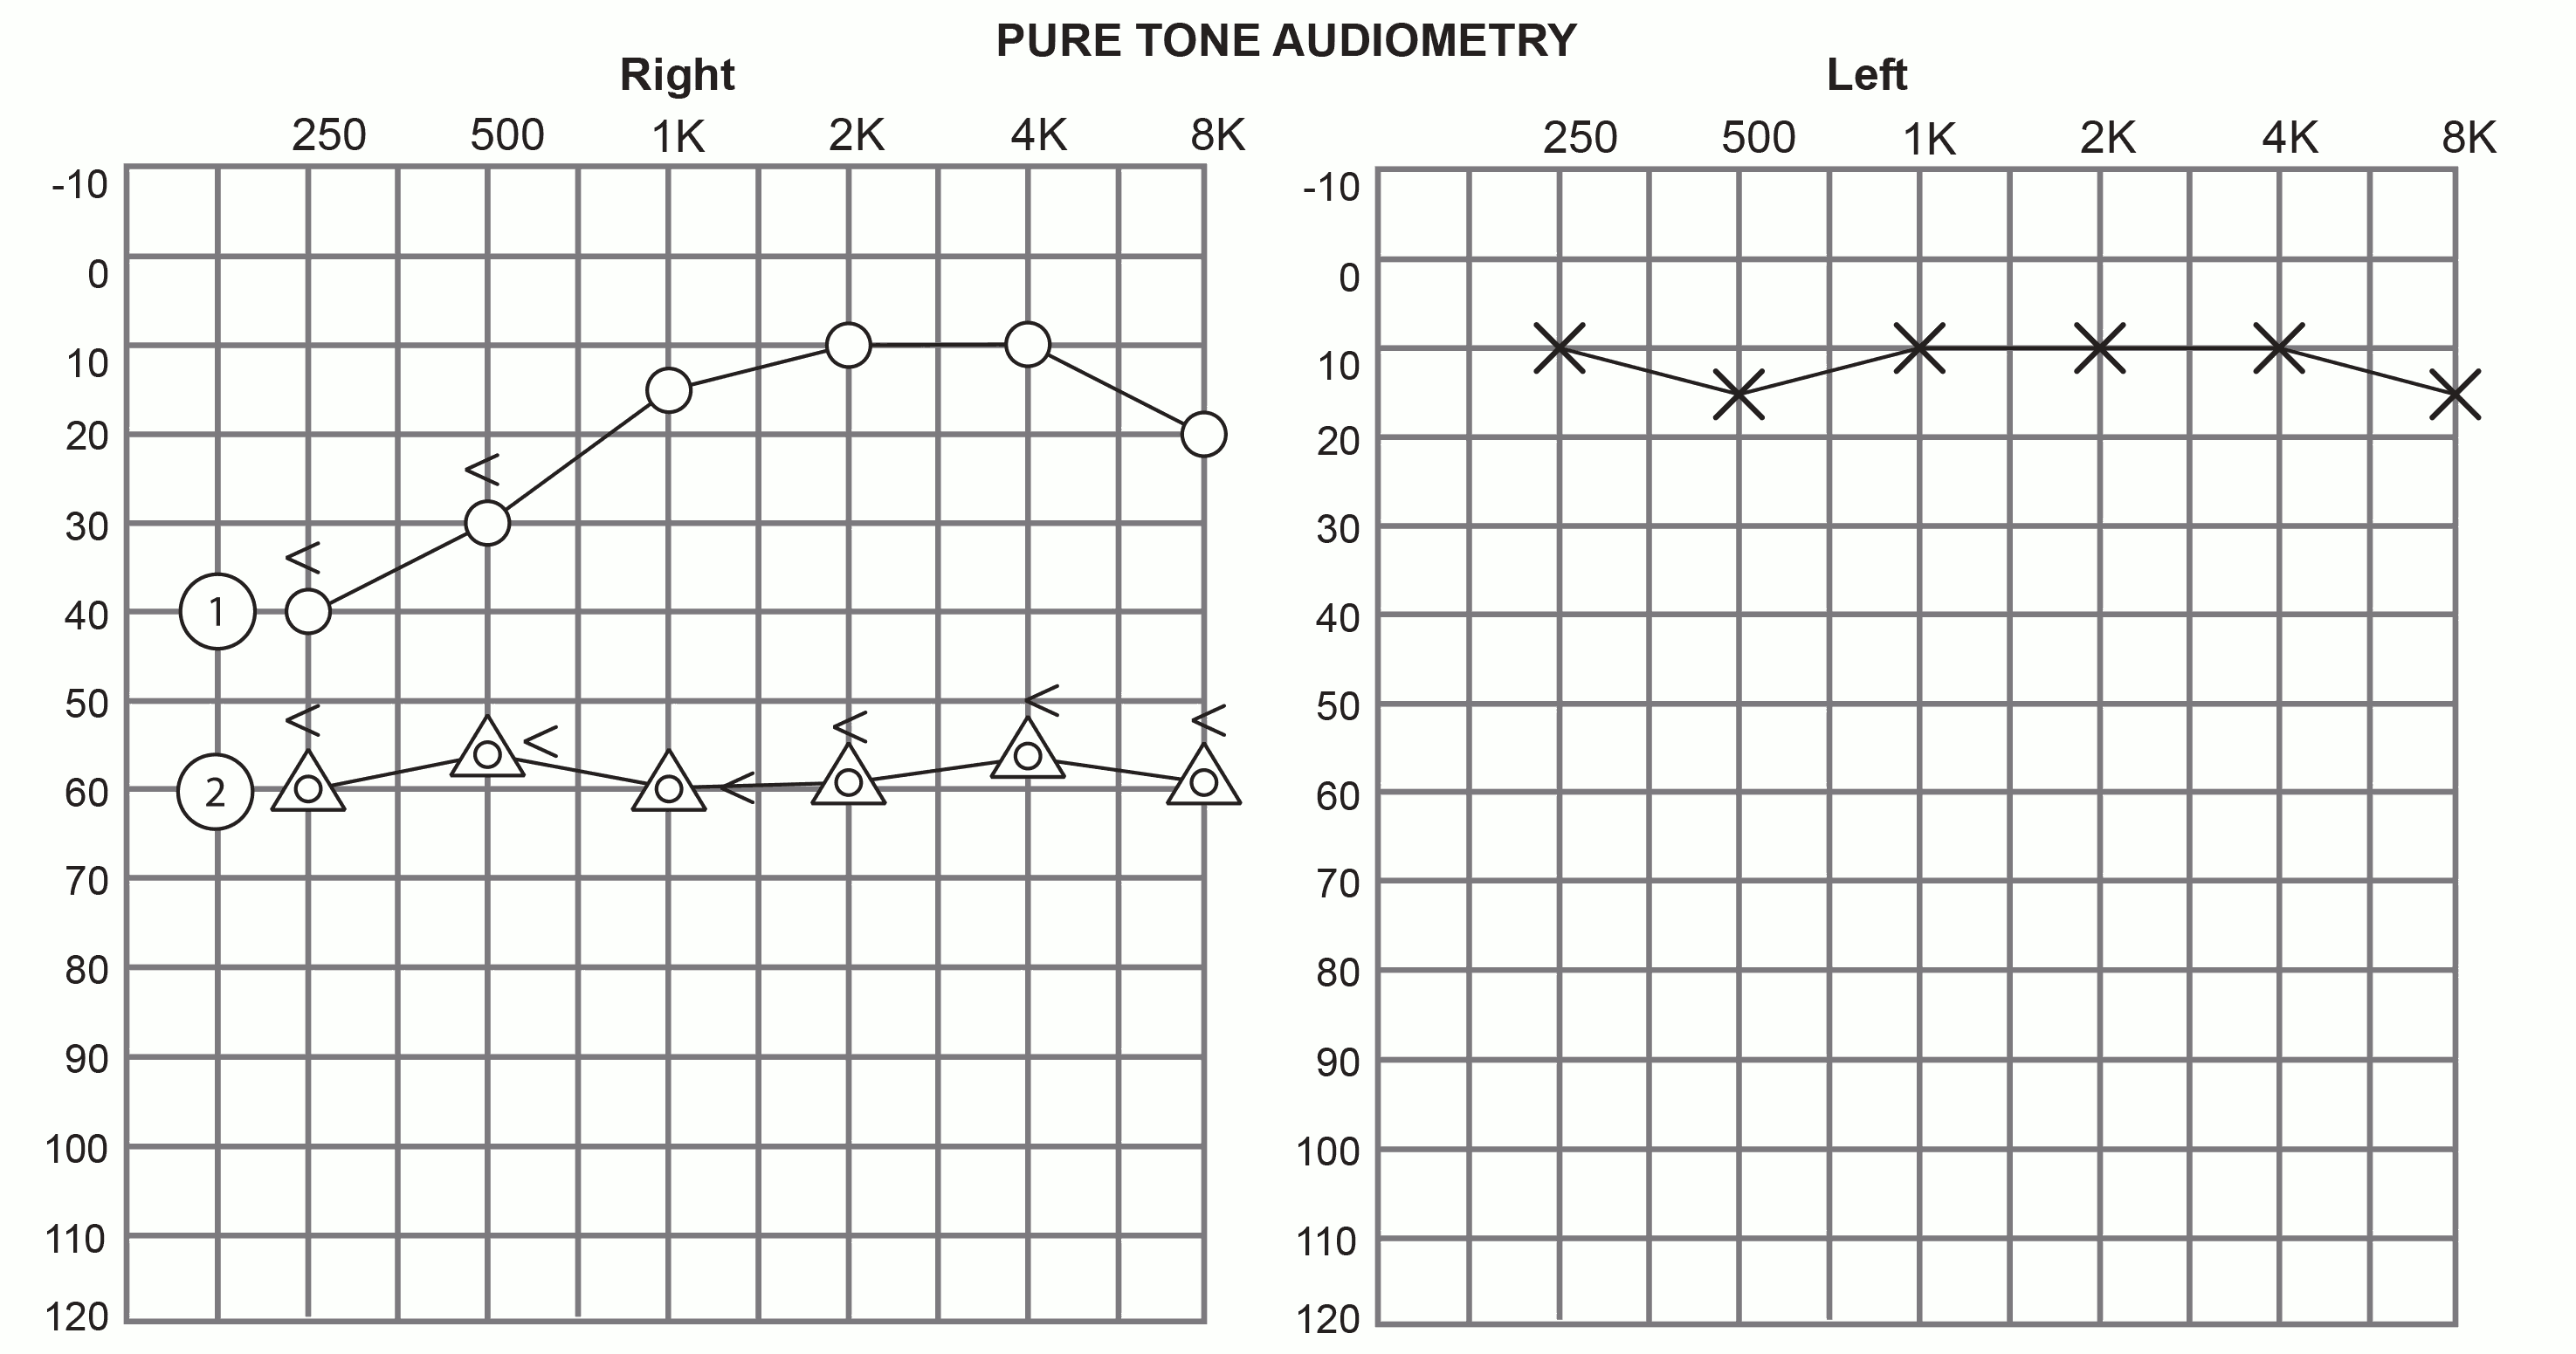 Typical Menière's audiogram